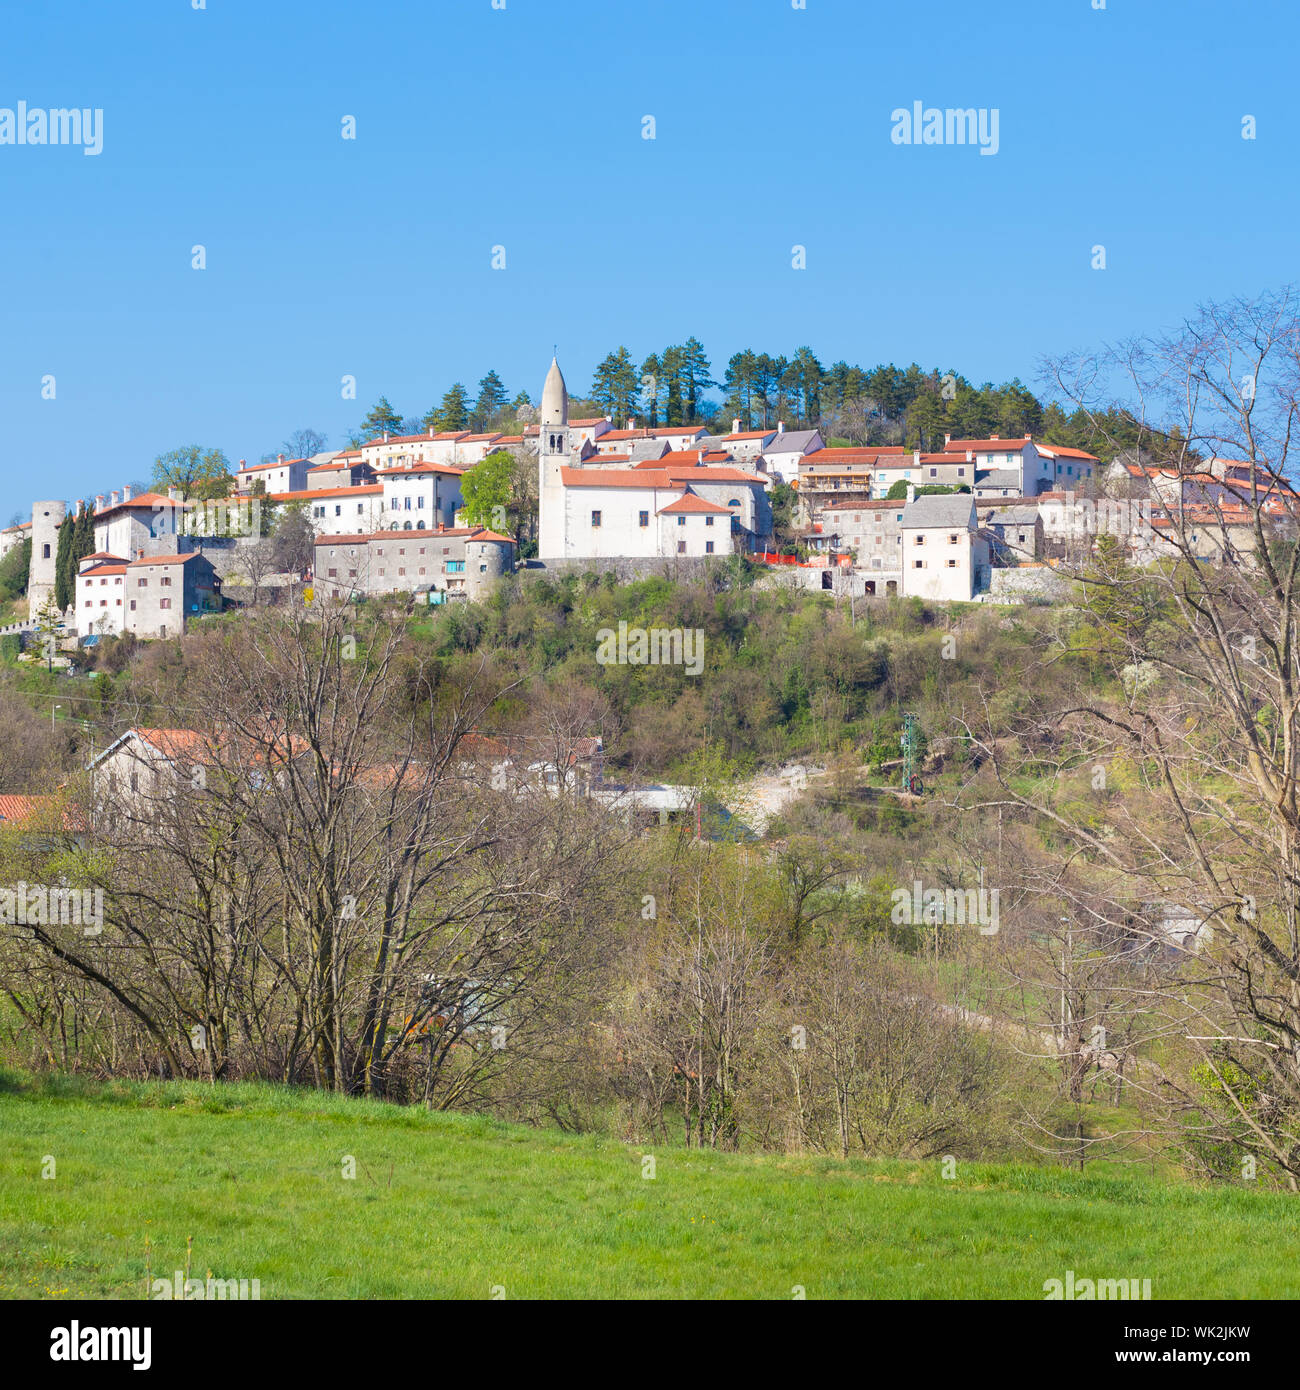 Villaggio Tradizionale sul Carso sloveno. Stanjel, Slovenia, l'Europa. Foto Stock